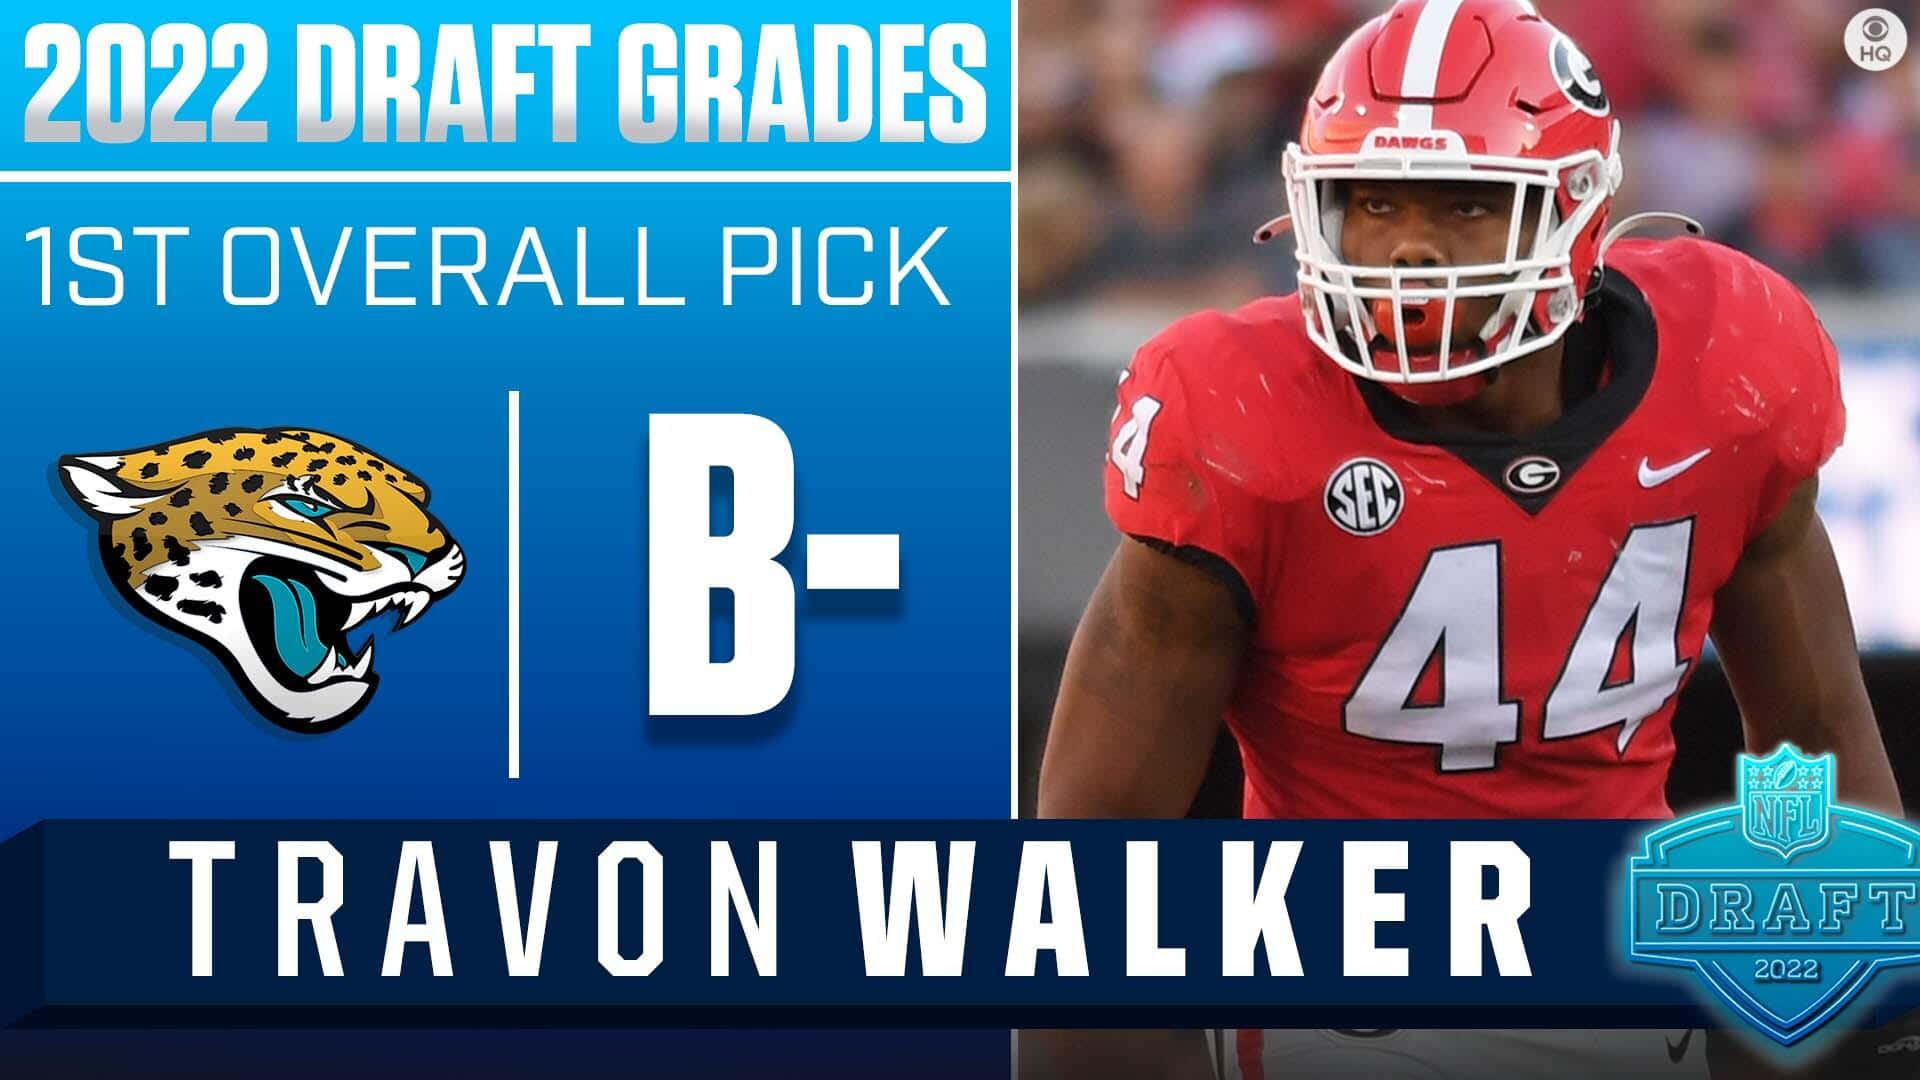 Travon Walker pick Jacksonville Jaguars NFL Draft 2022 Poster